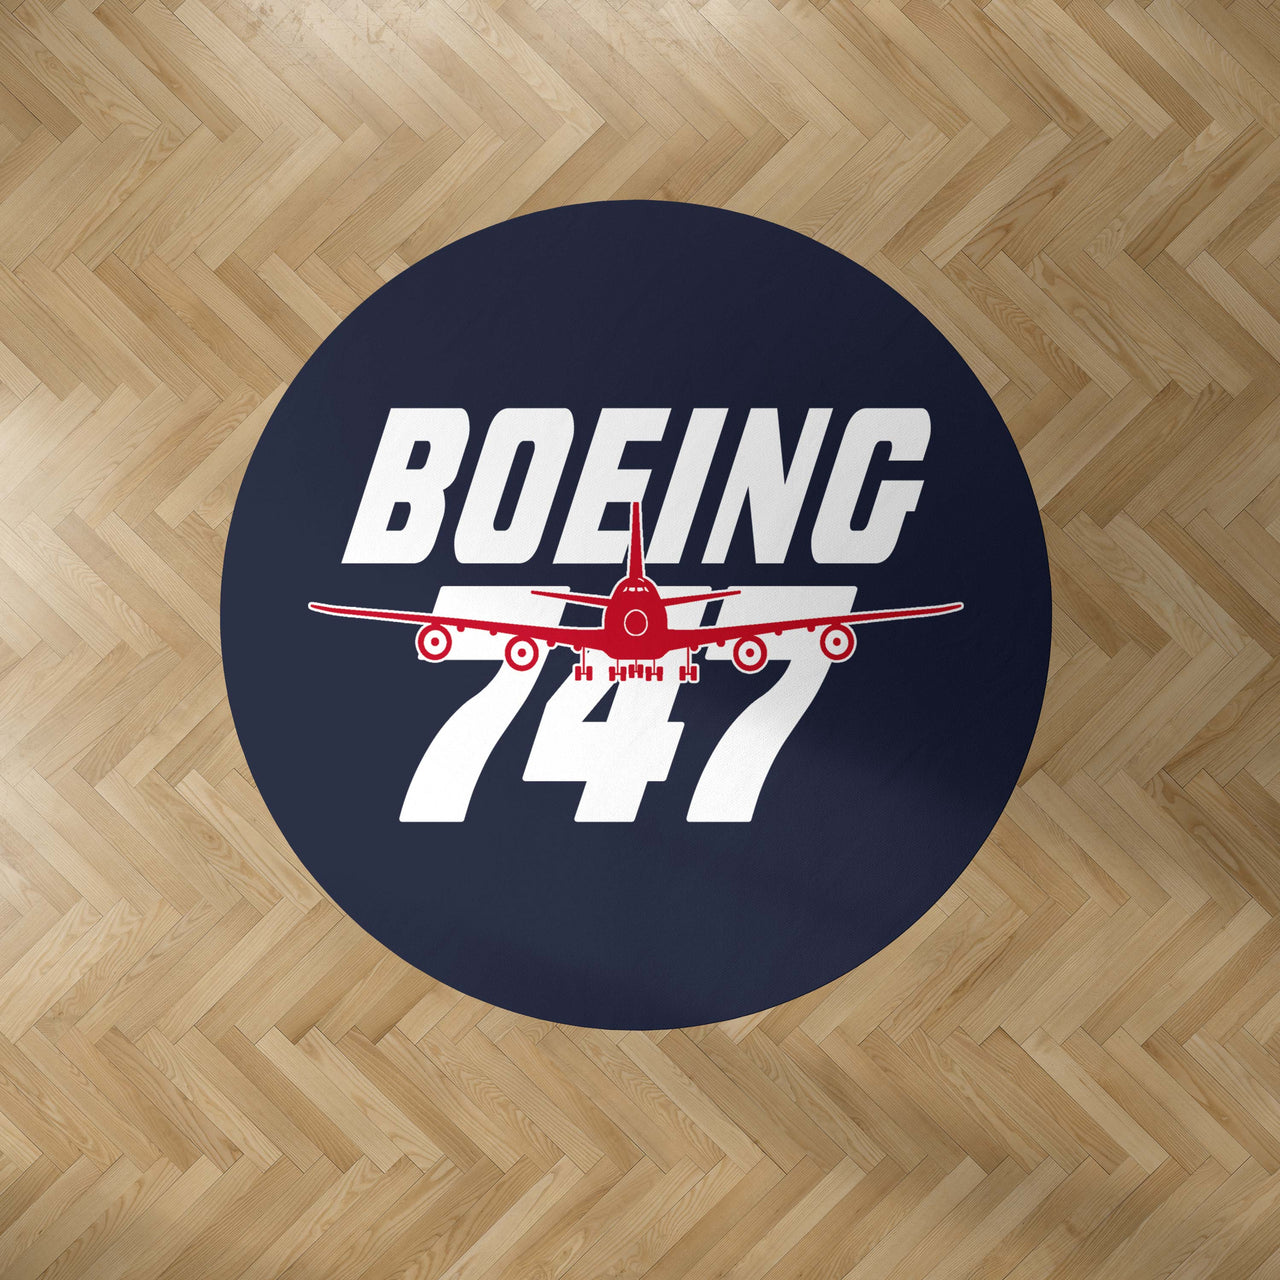 Amazing Boeing 747 Designed Carpet & Floor Mats (Round)